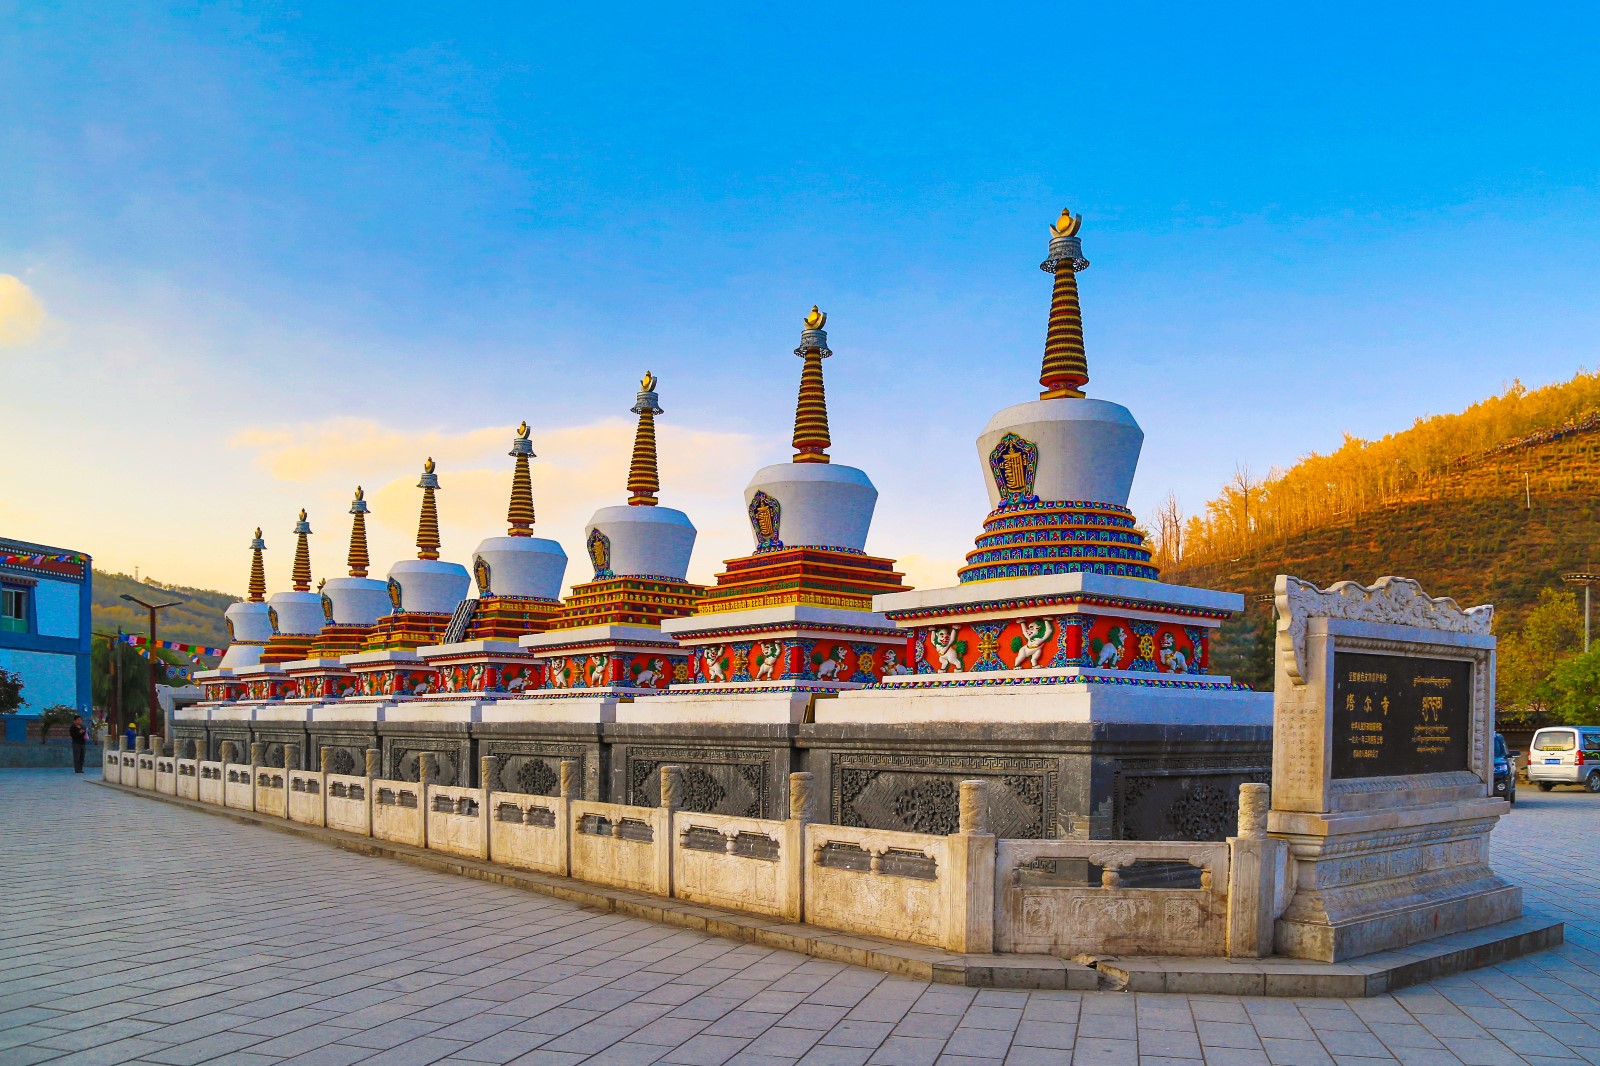 因为历史原因,塔庙很受尊重,也是来西宁旅游不能错过的必看景点